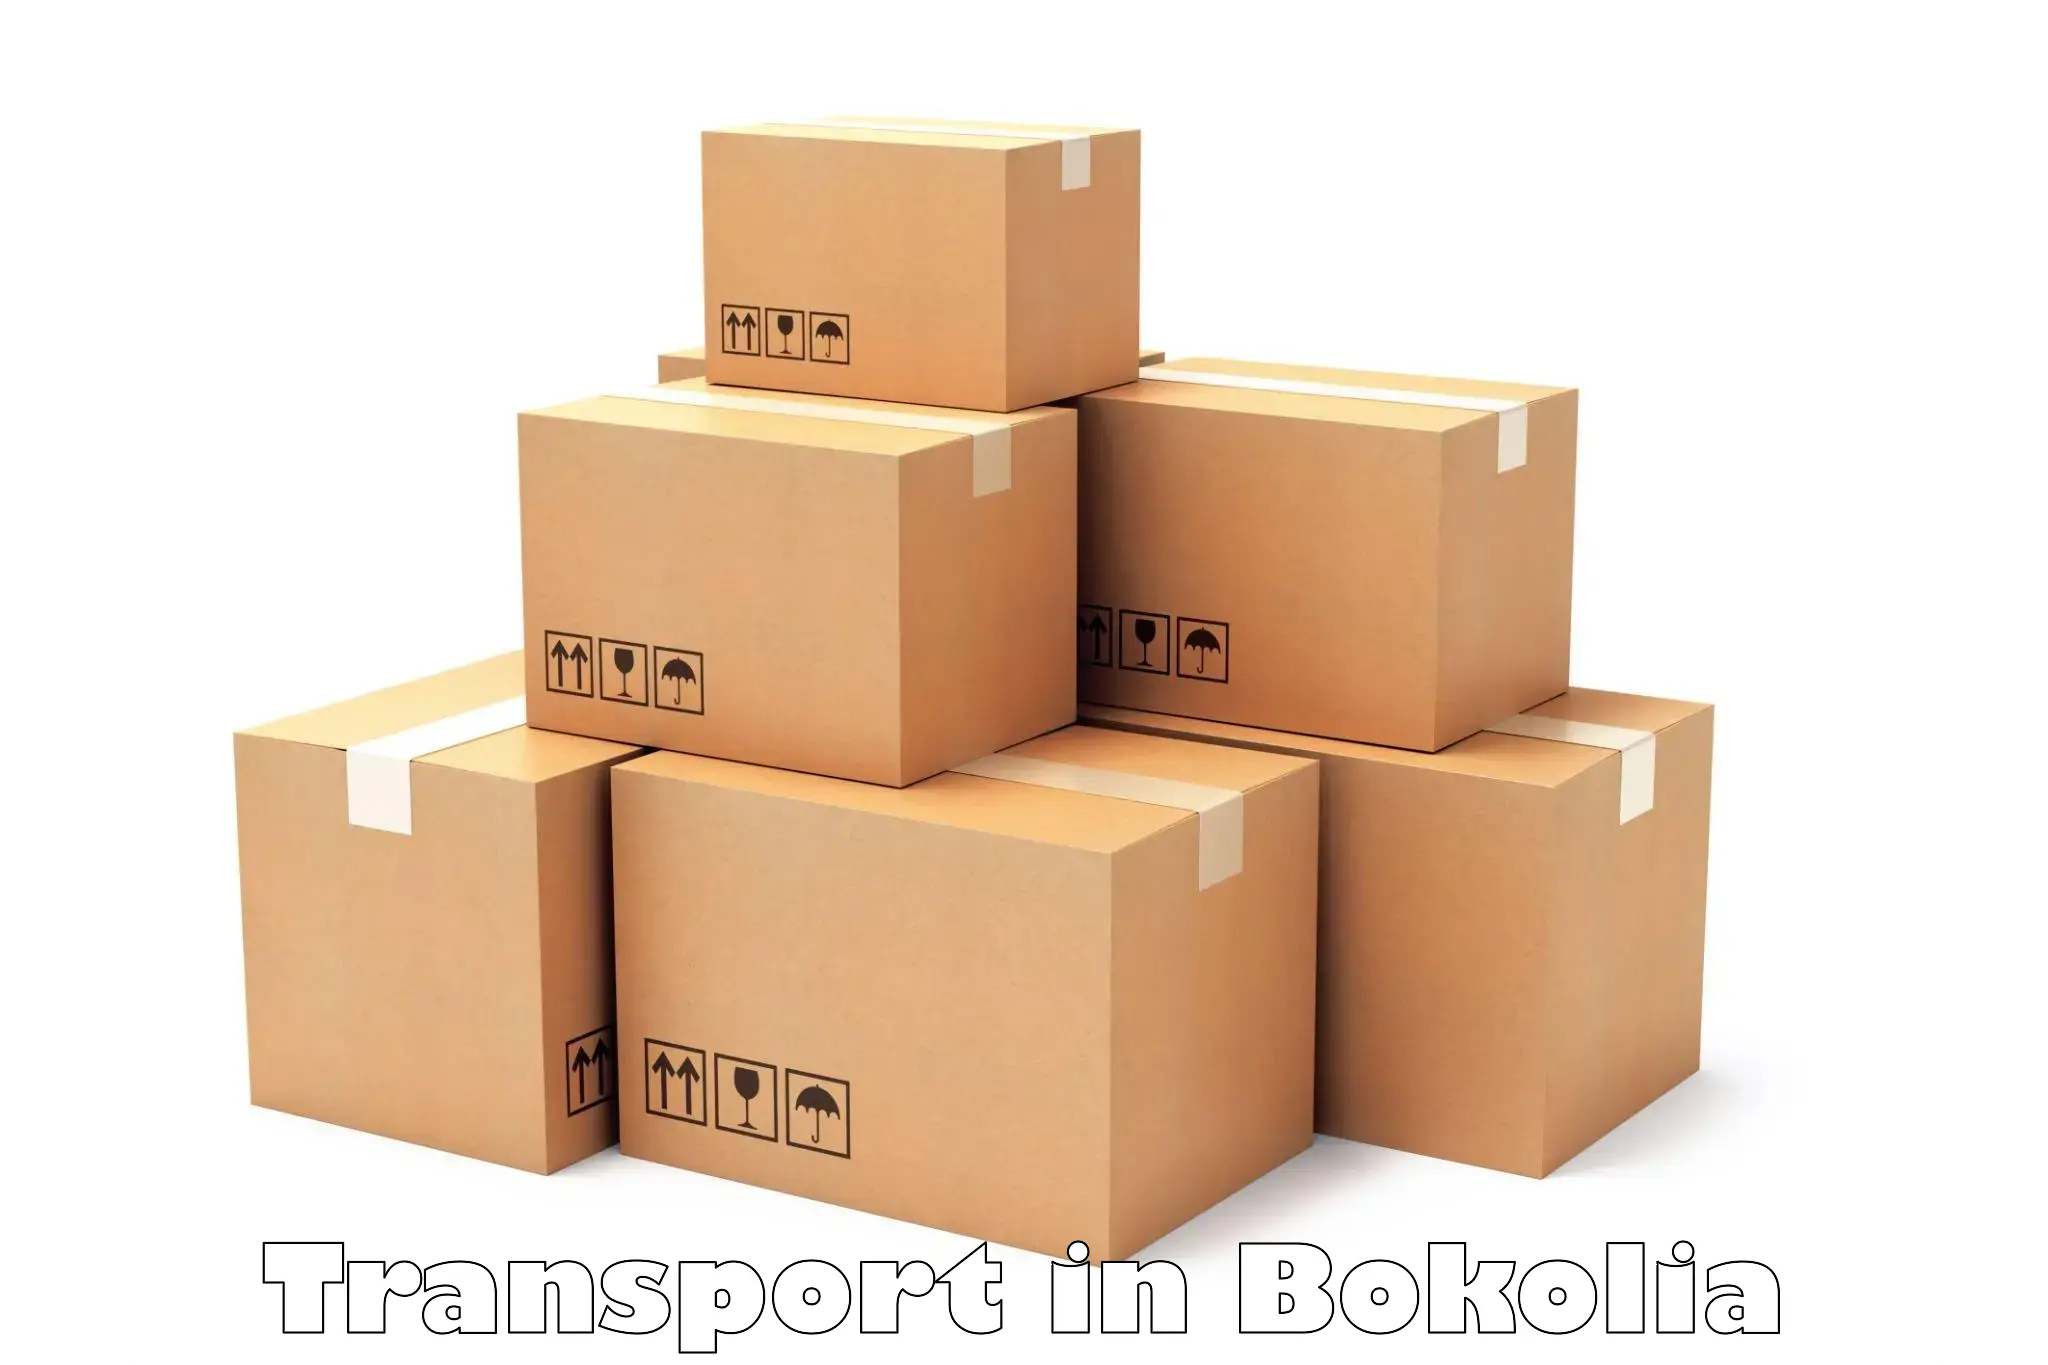 Delivery service in Bokolia